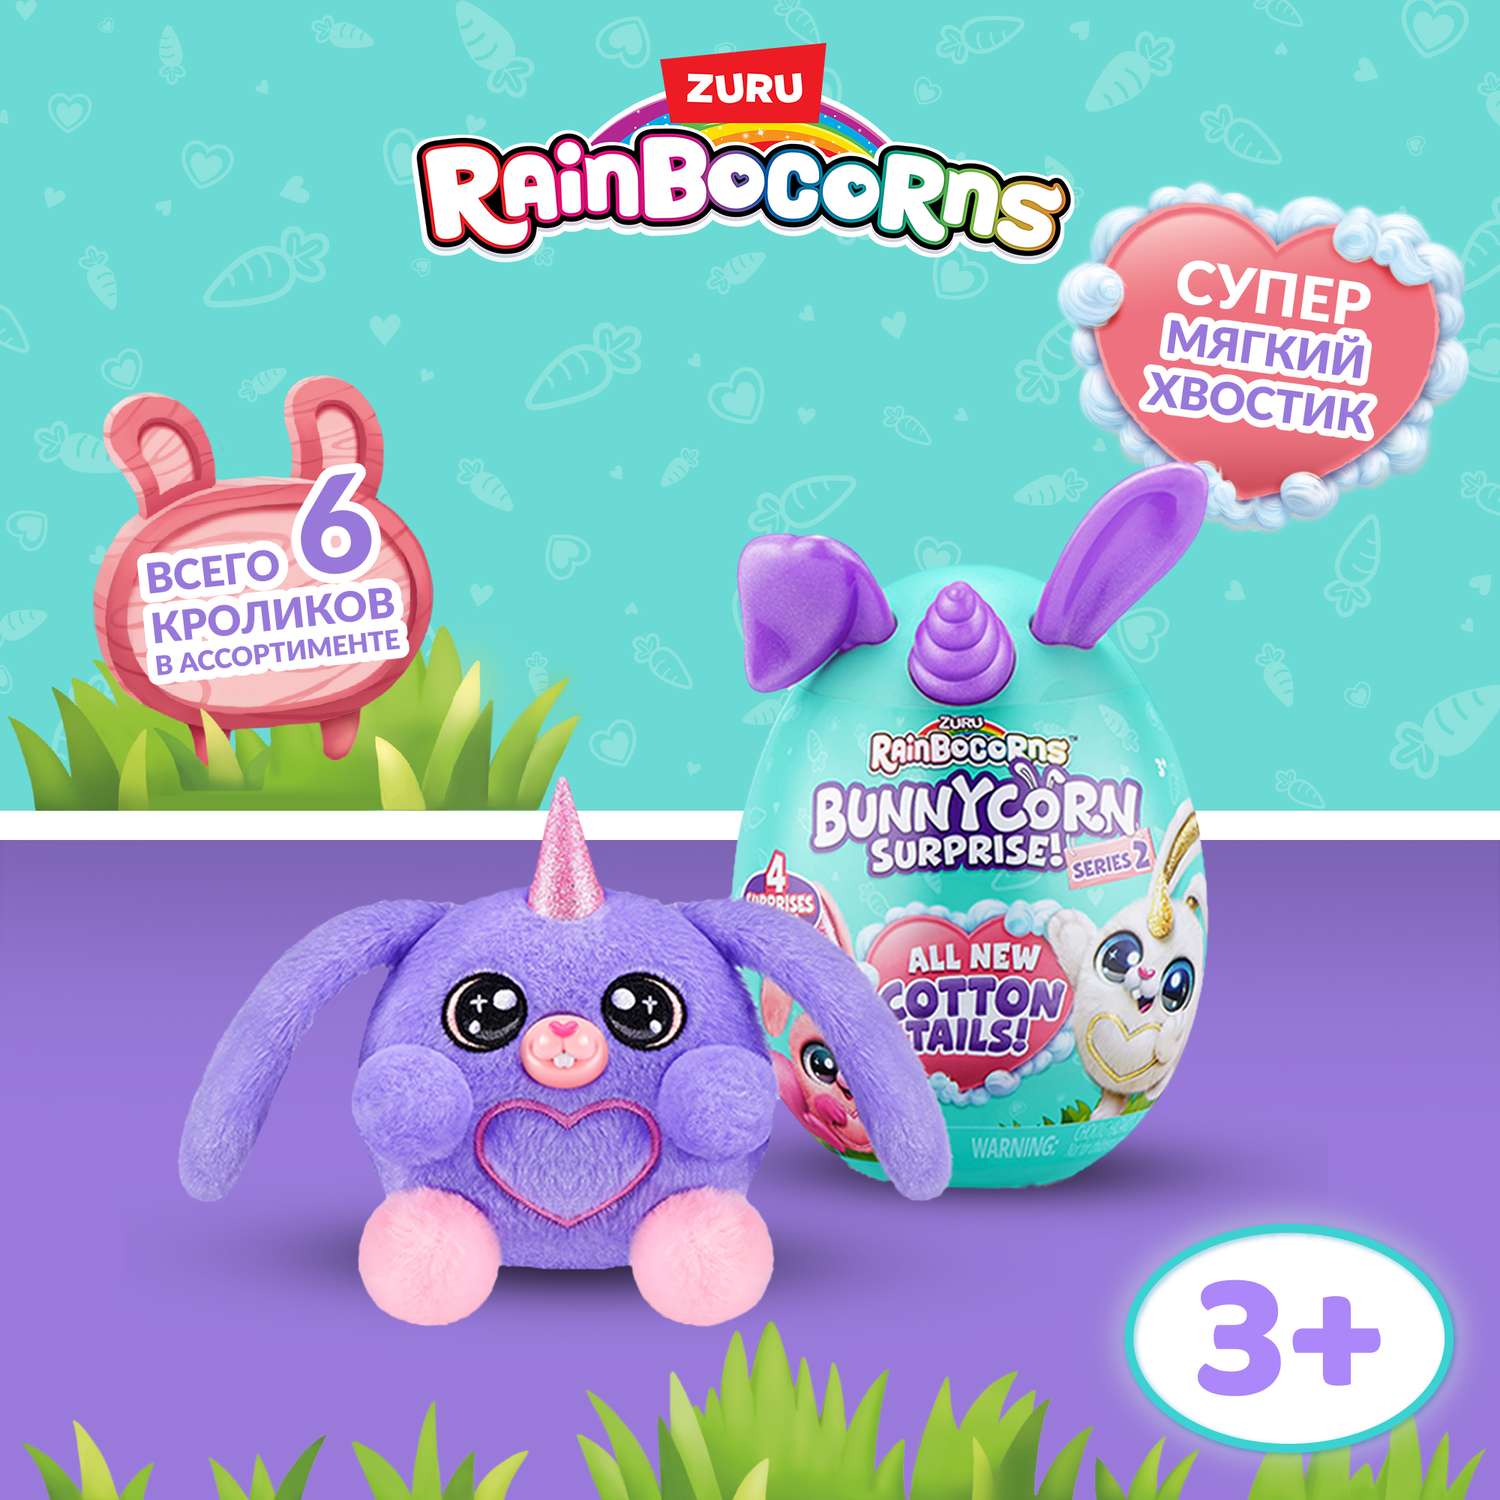 Игрушка Rainbocorns Bunnycorn Яйцо в непрозрачной упаковке (Сюрприз) 9280SQ3 - фото 1